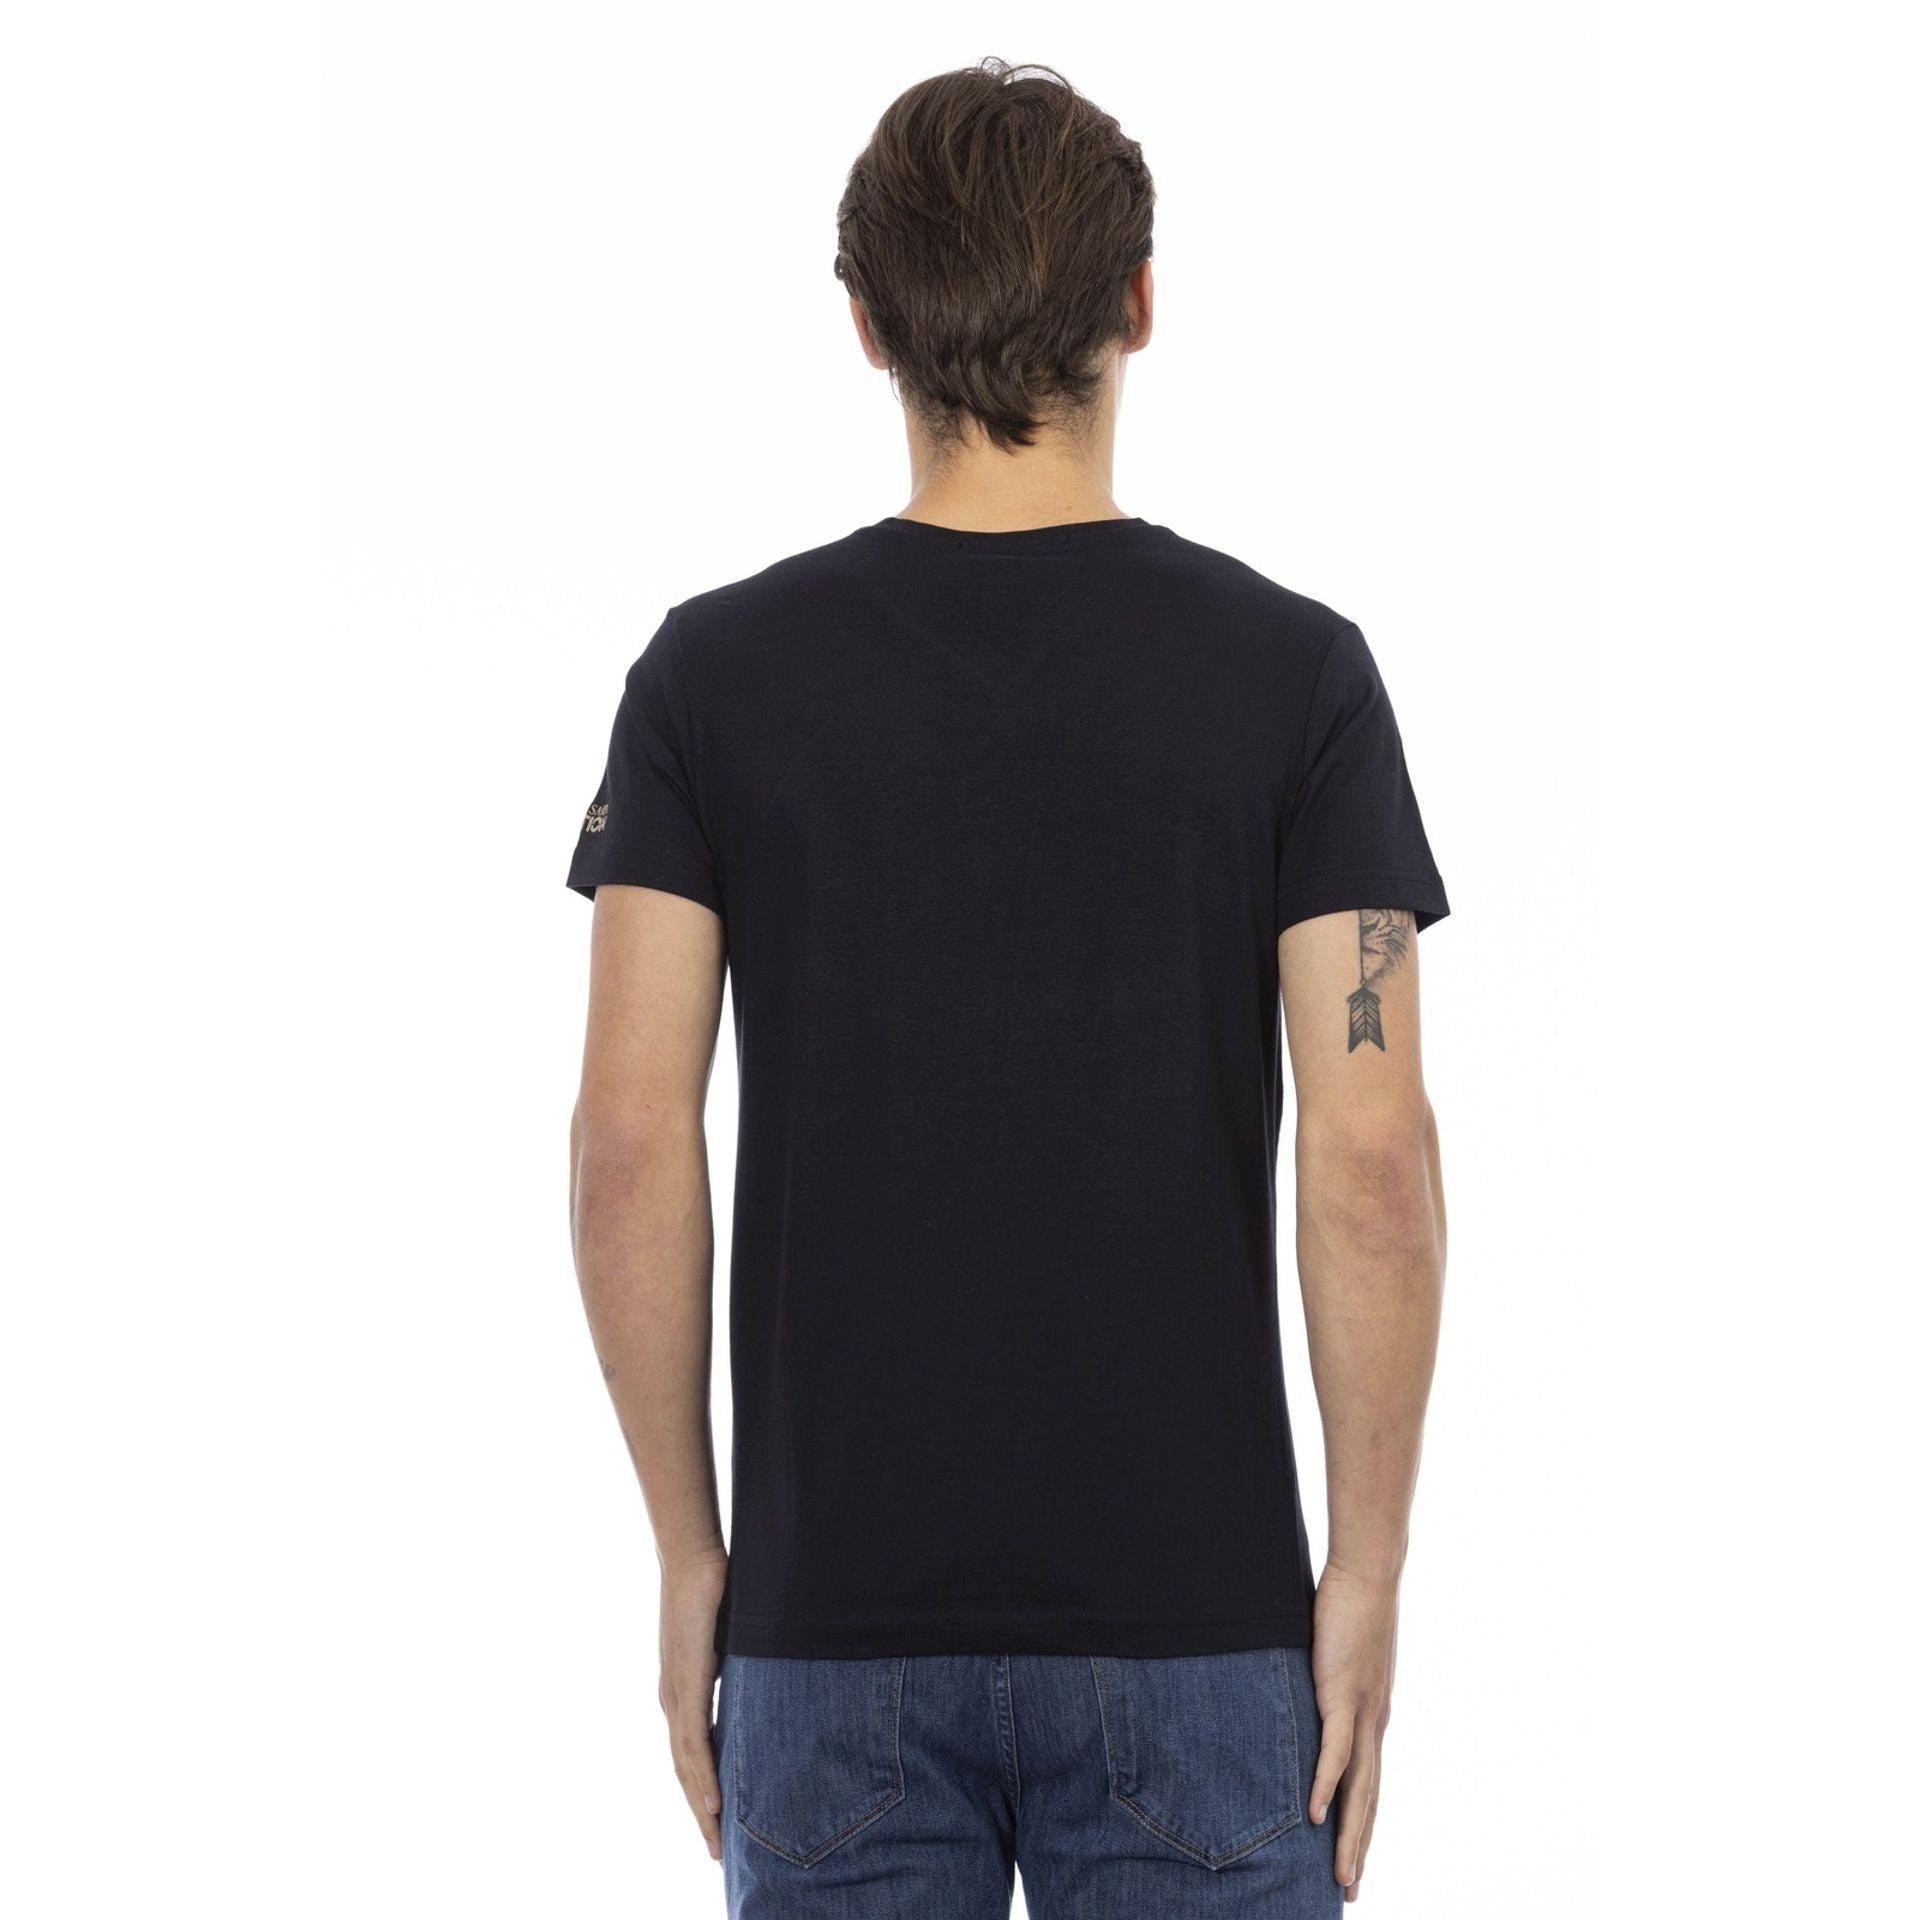 Trussardi T-Shirt Trussardi Action das eine sich subtile, das aber stilvolle Logo-Muster Note durch Schwarz T-Shirts, zeichnet aus, Es verleiht